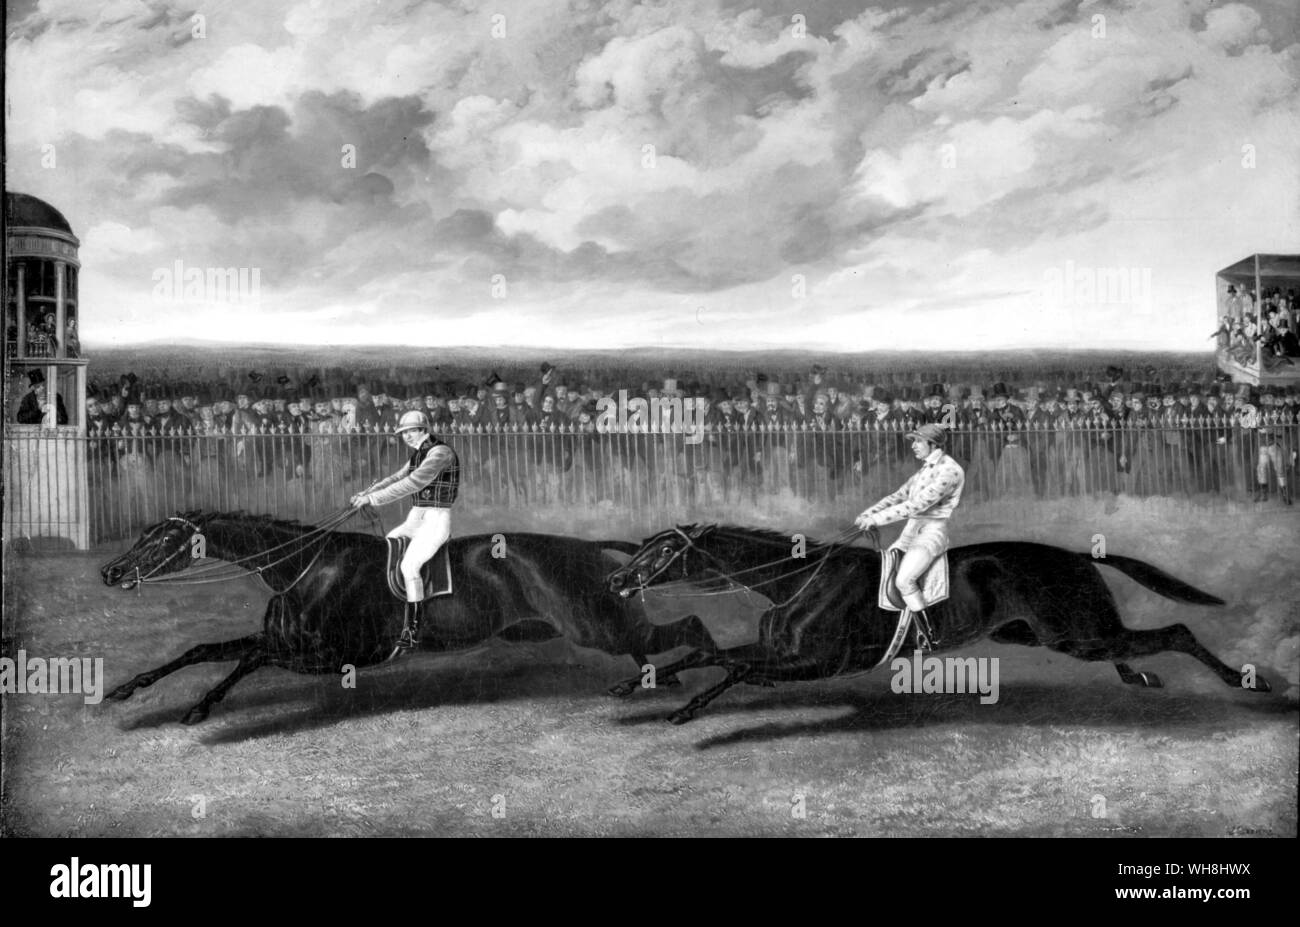 Flying Dutchman, remportant de voltigeur à York 1851. Darley Arabian Sire line : Le Roi Fergus Direction générale. Le hollandais volant a été un cheval doué de la plus haute classe. Cette re-match, plus de deux milles, tenue le 13 mai 1851, a été présentée comme le match du siècle. Les tribunes étaient remplies de milliers de spectateurs, et ils ont eu droit à un magnifique spectacle de course. Voltigeur, transportant huit livres et demie de moins que son rival et en vertu d'un nouveau partenaire, Nat Flatman, a fait toute la course jusqu'à une centaine de mètres de la maison lorsque le Hollandais volant, en vertu d'un sobre Charles Marlow, allaient aux côtés Banque D'Images